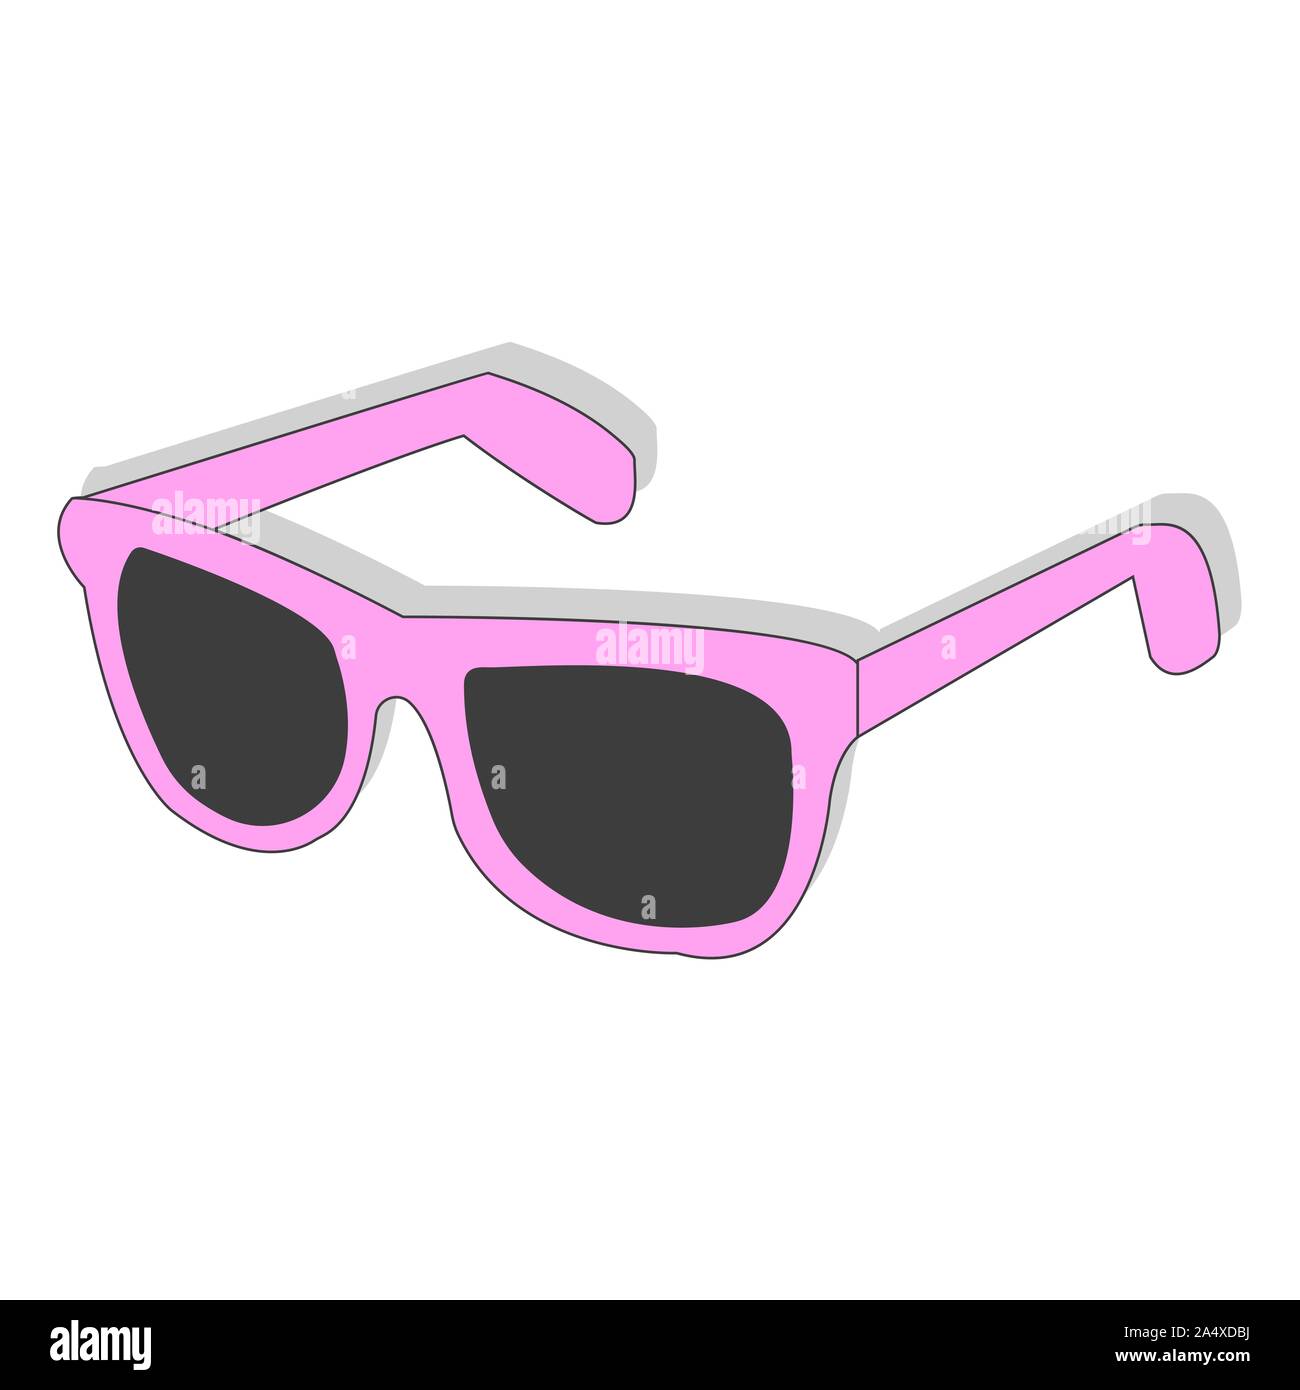 Moda nero e colorato occhiali da sole set accessori occhiali sole telaio in plastica moderni occhiali illustrazione vettoriale. La protezione solare viso Illustrazione Vettoriale